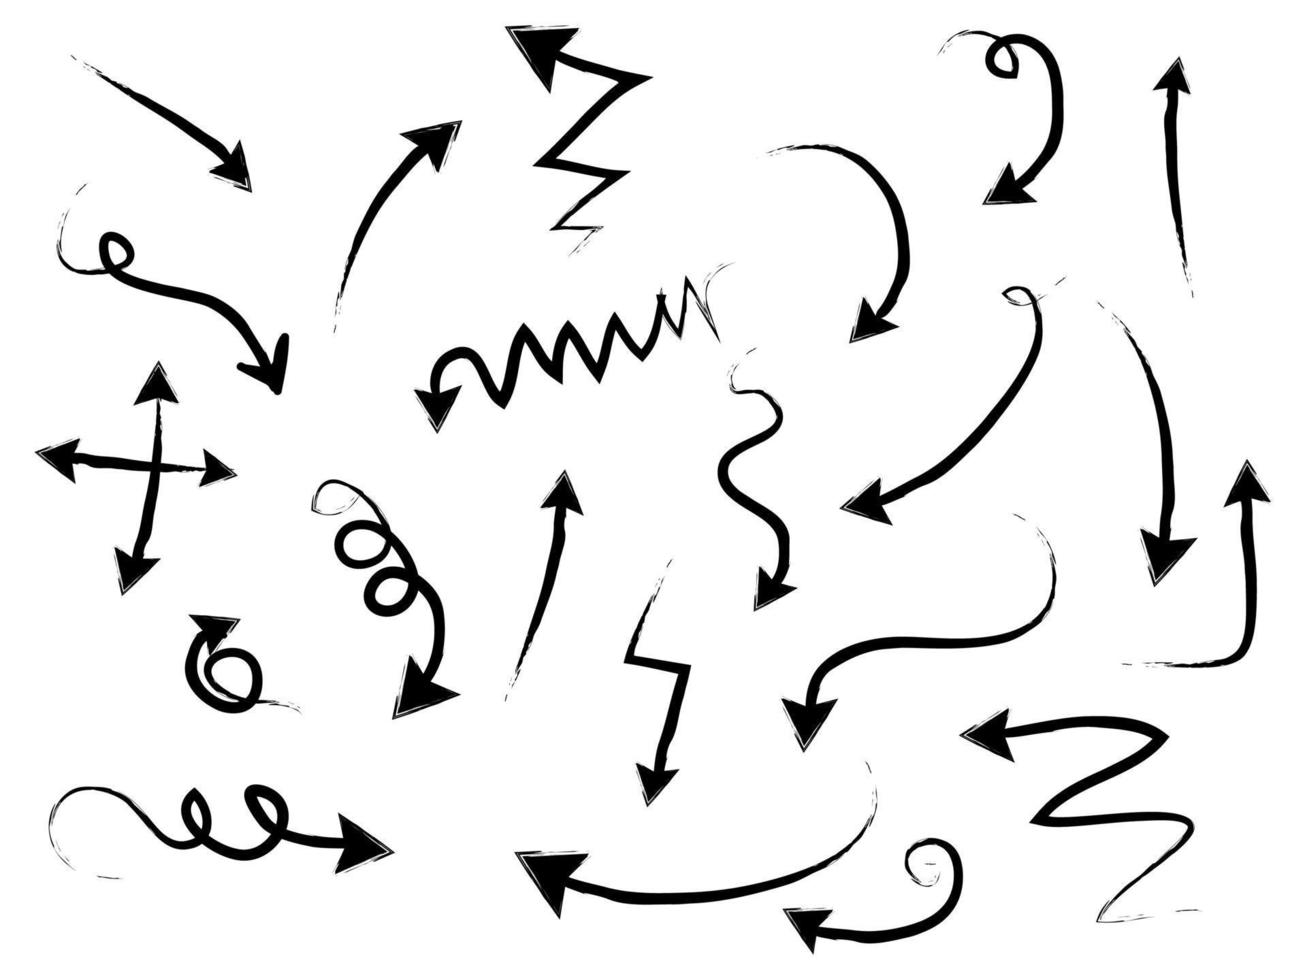 conjunto de ícones de setas desenhadas à mão. ícone de seta com várias direções. ilustração vetorial doodle. Isolado em um fundo branco vetor